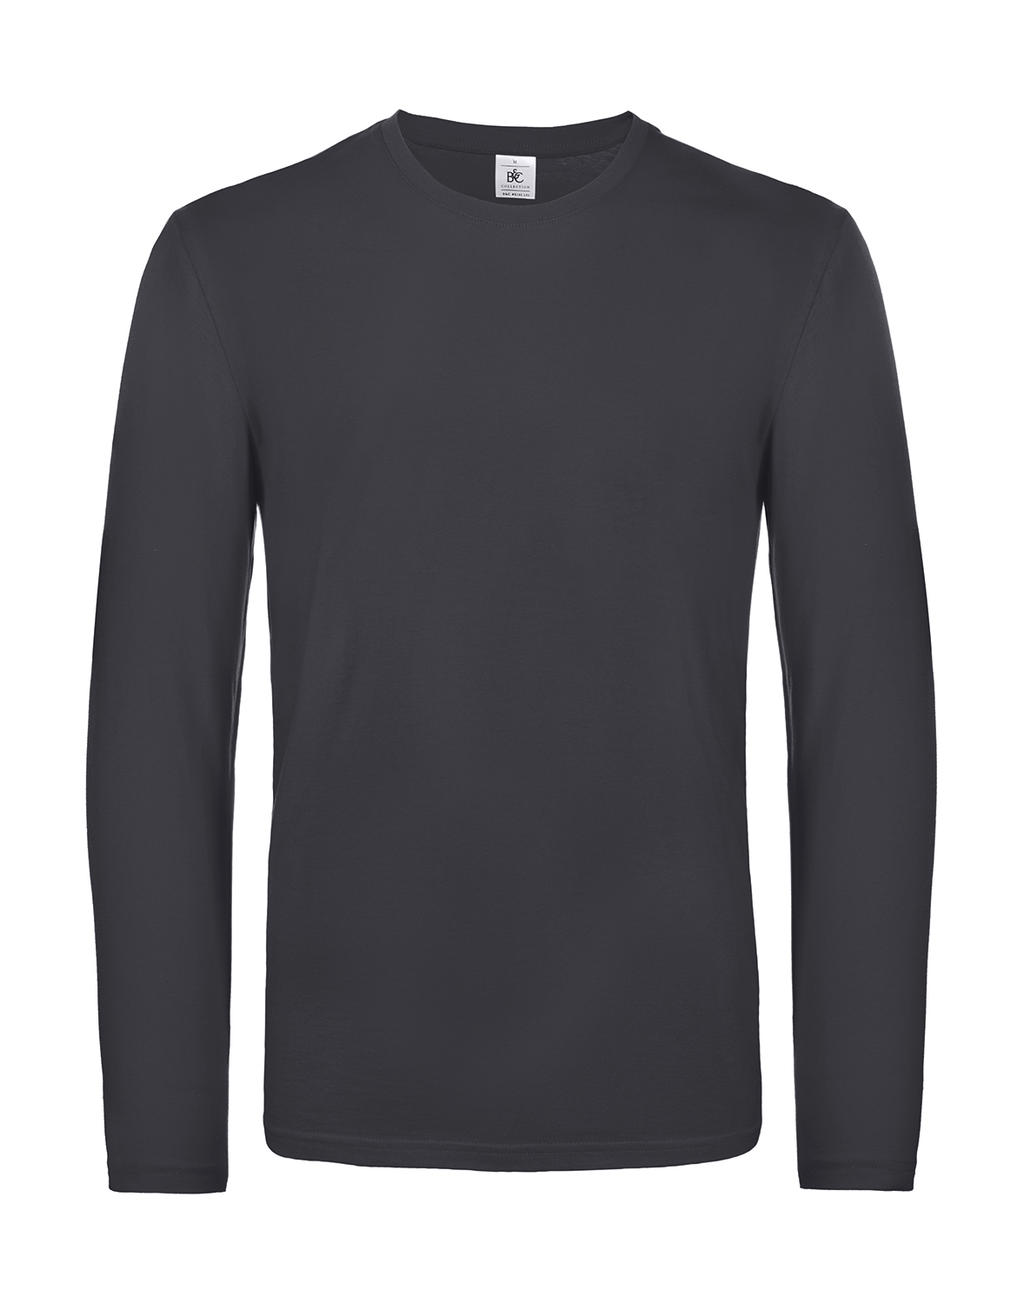 Tričko s dlhými rukávmi #E190 - dark grey